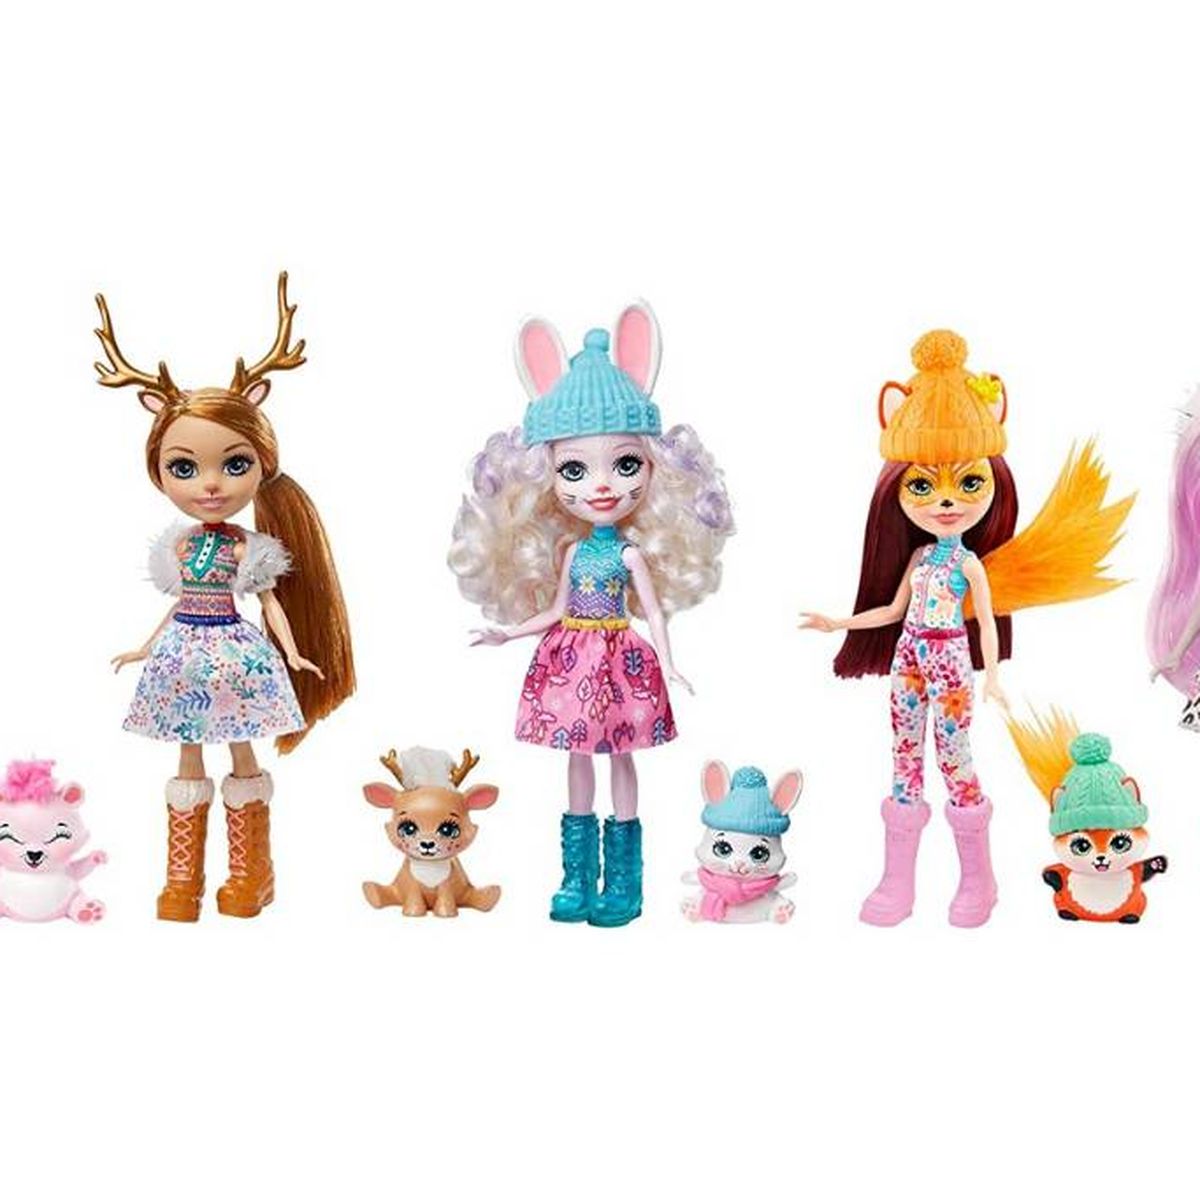 Muñecas Enchantimals, los juguetes de moda